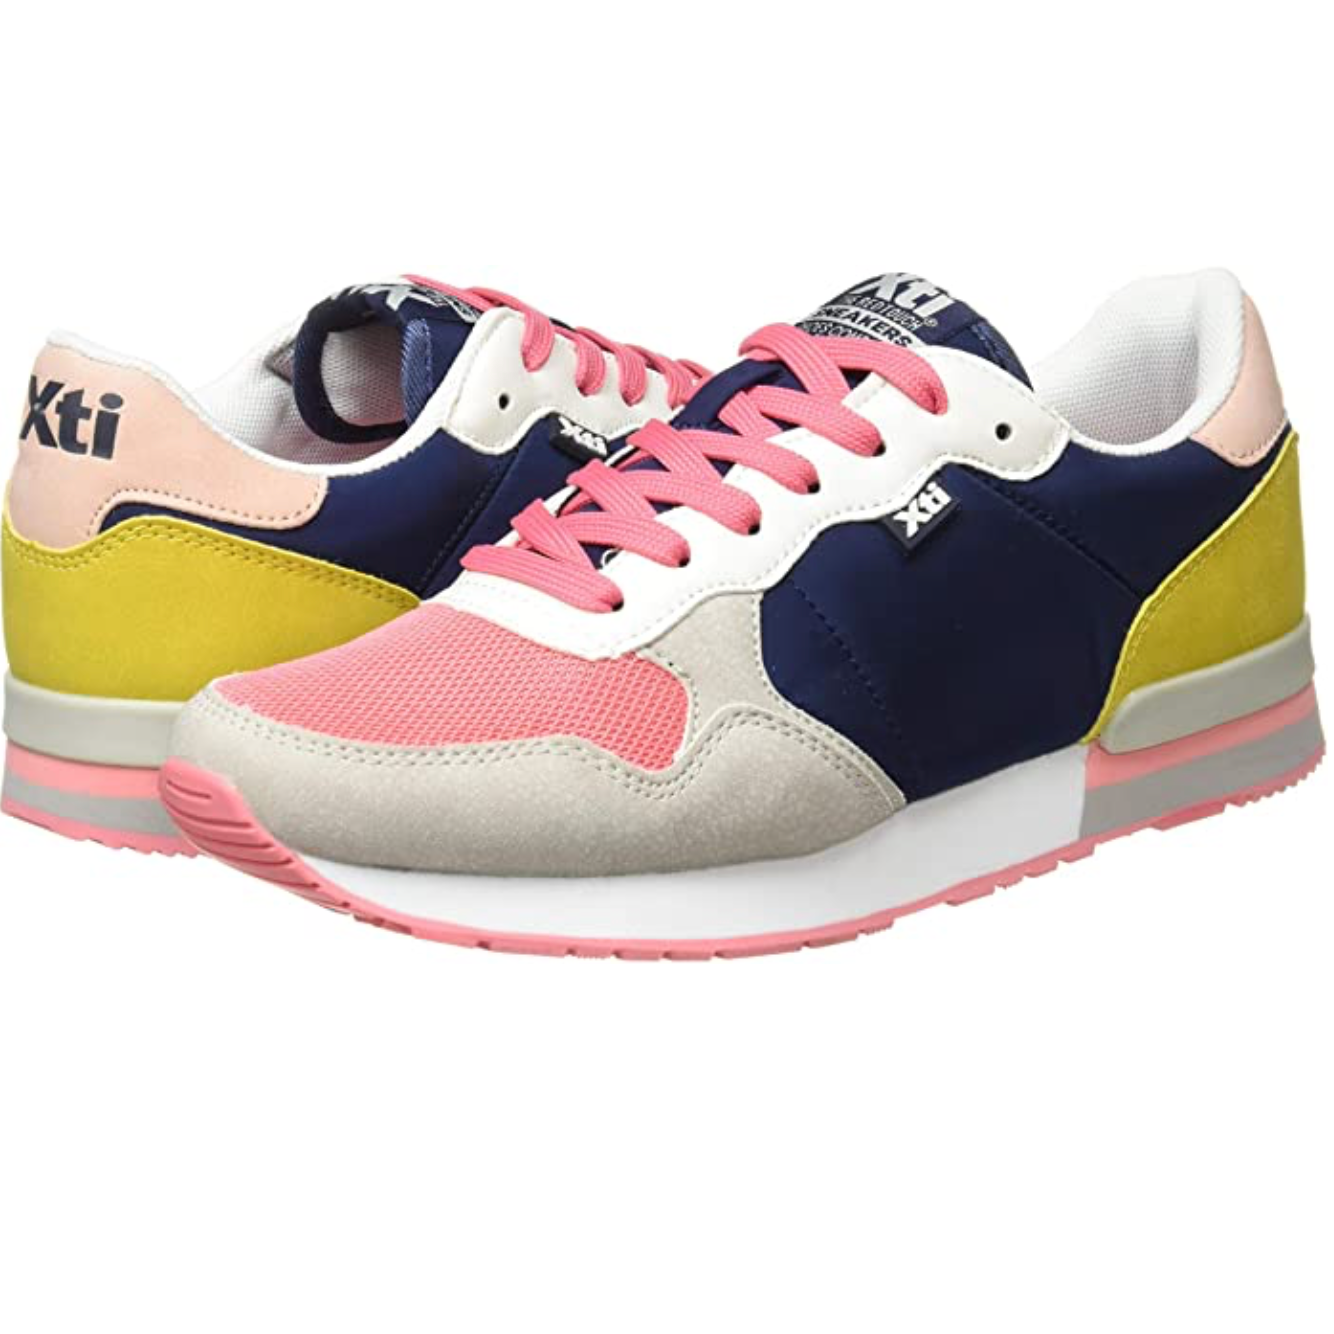 XTI - 42402 - Women's Fashion Sneaker - Multi Coloured